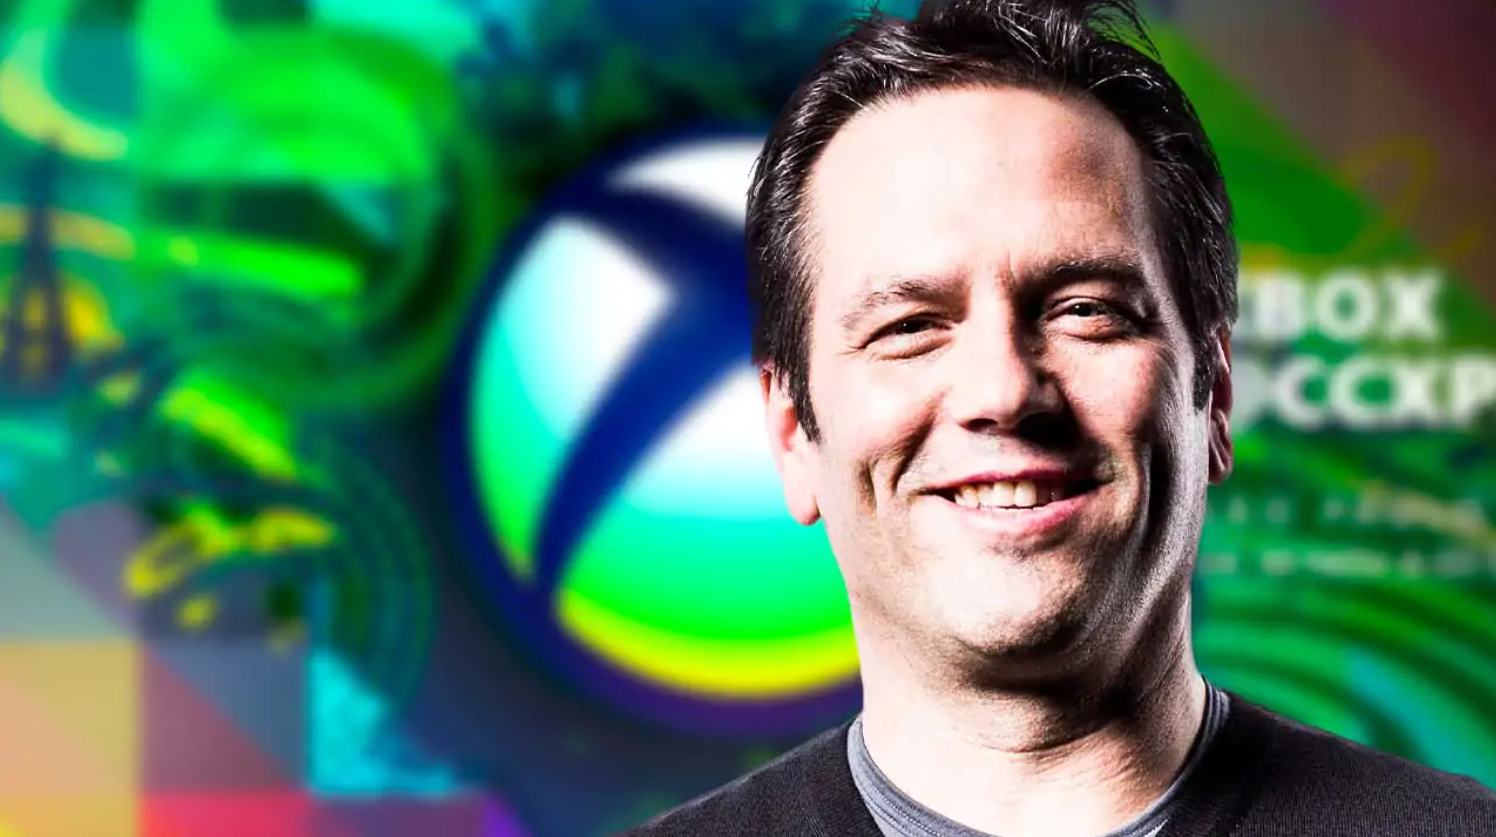 Xbox: Phil Spencer revela números incríveis sobre a marca e o Brasil